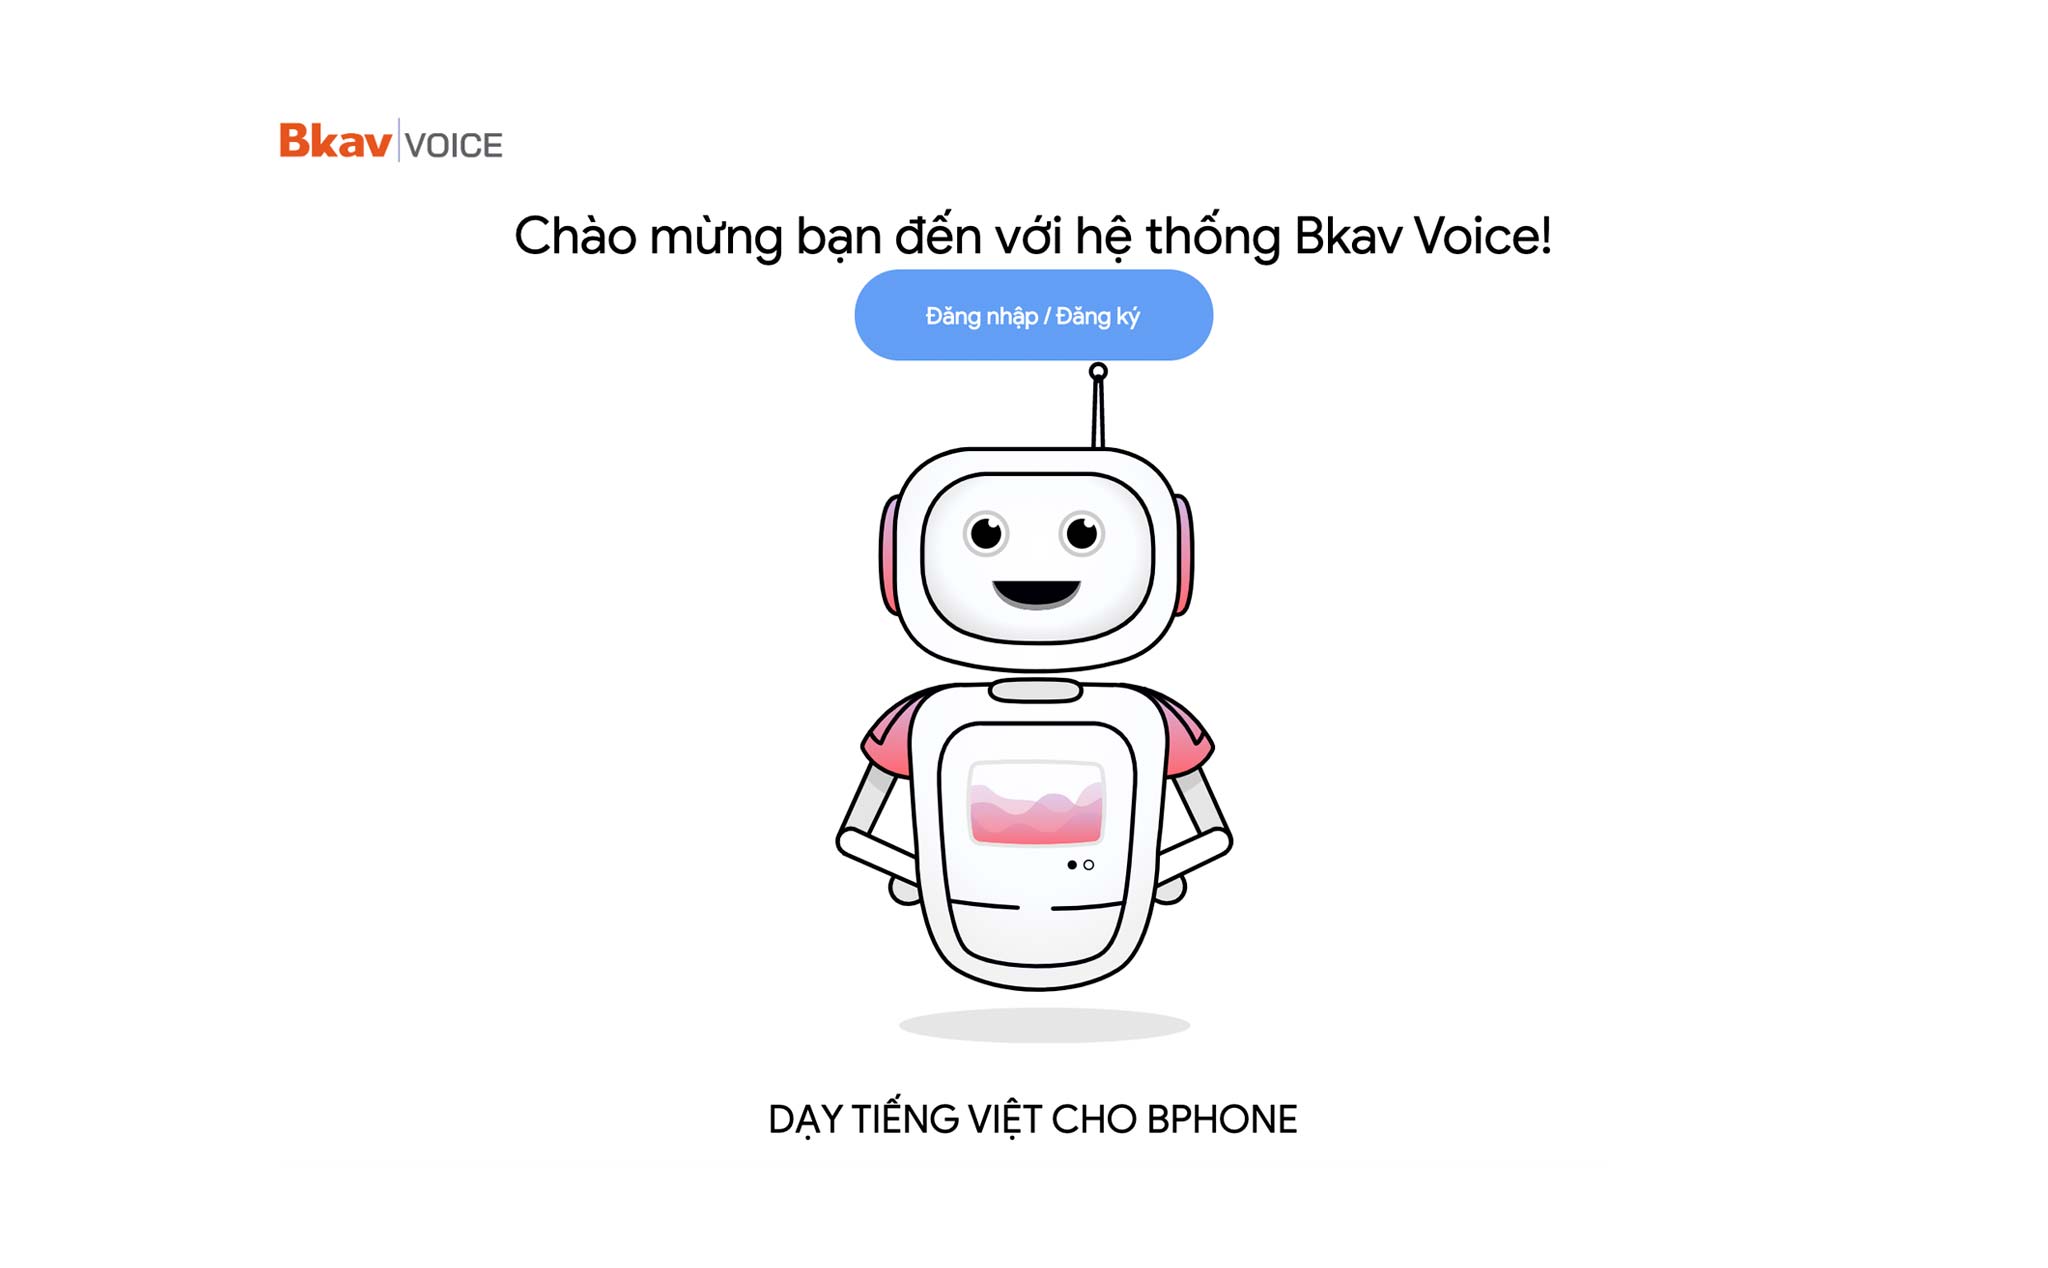 Mời tham gia chương trình dạy Tiếng Việt cho Bphone: gửi 300 mẫu câu qua giọng nói nhận 100.000 đồng